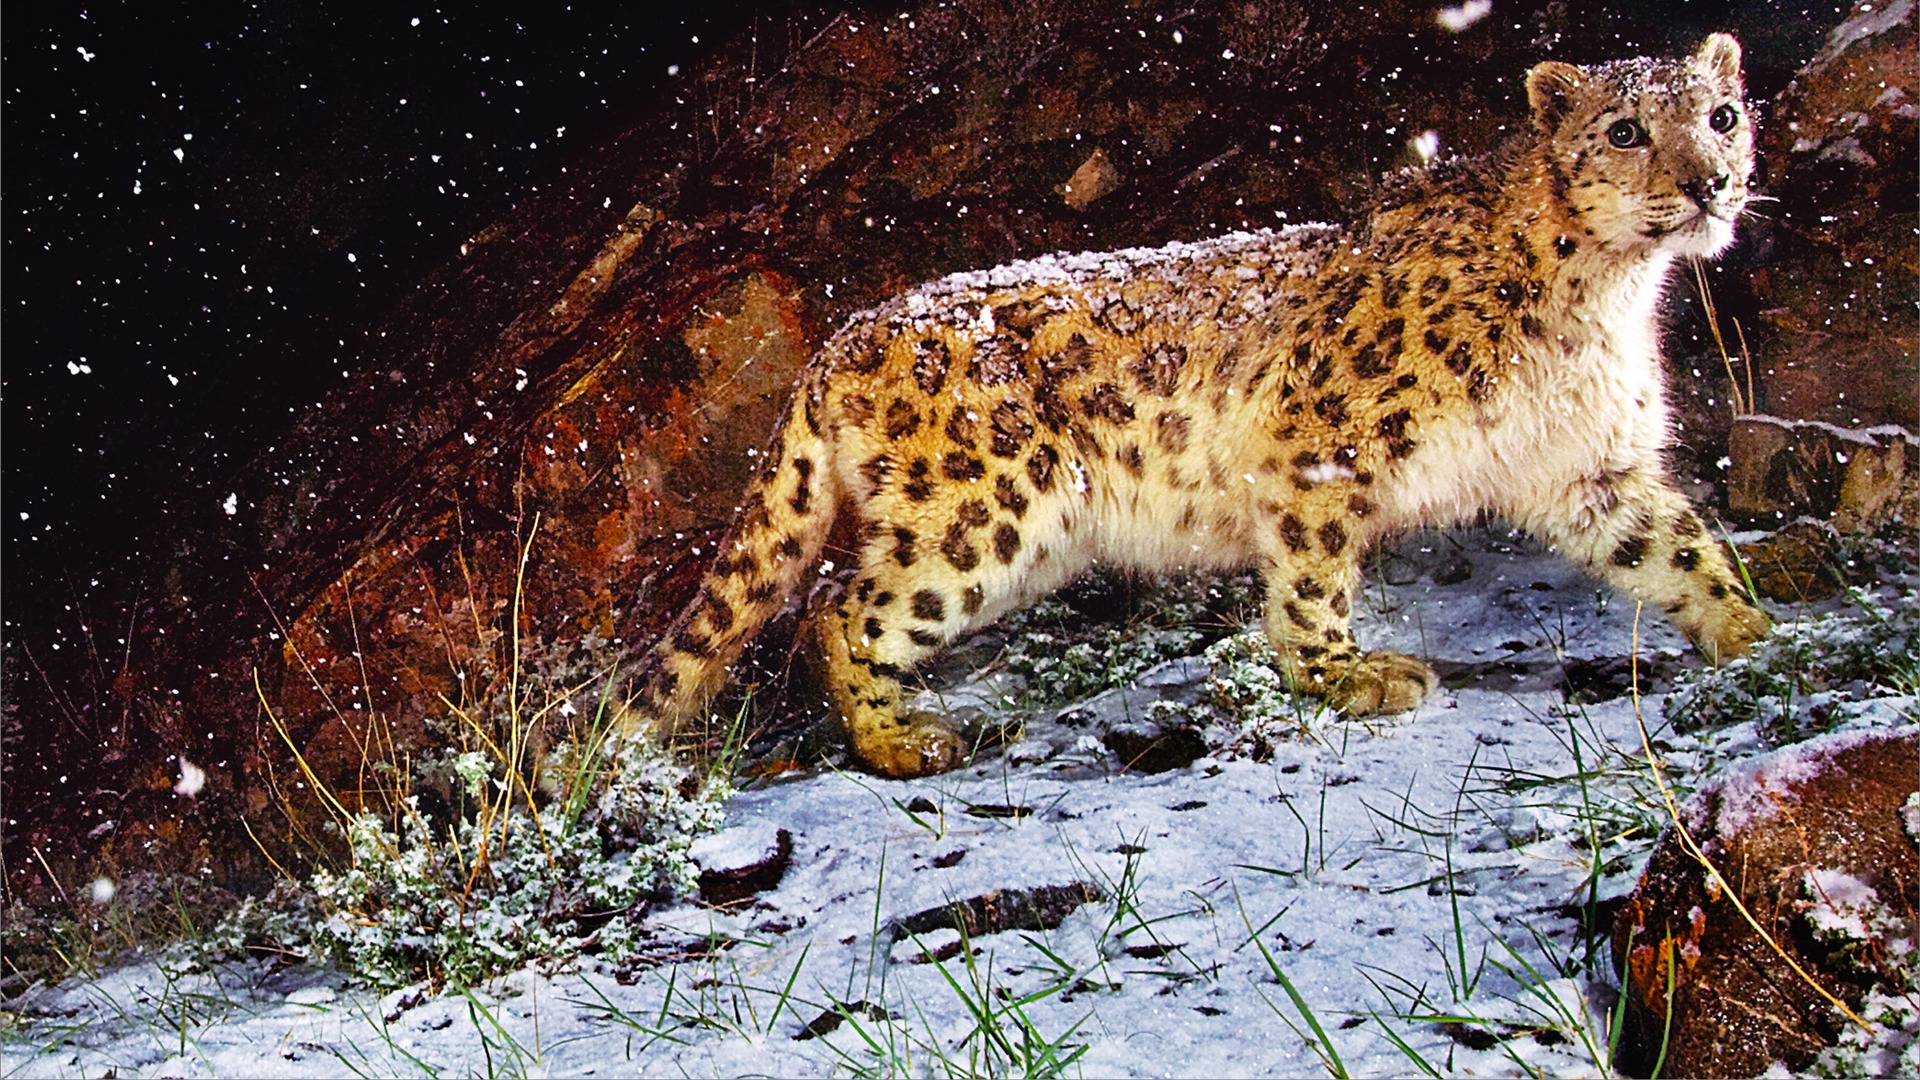 Apple Snow Leopard standardní wallpaper plné #1 - 1920x1080